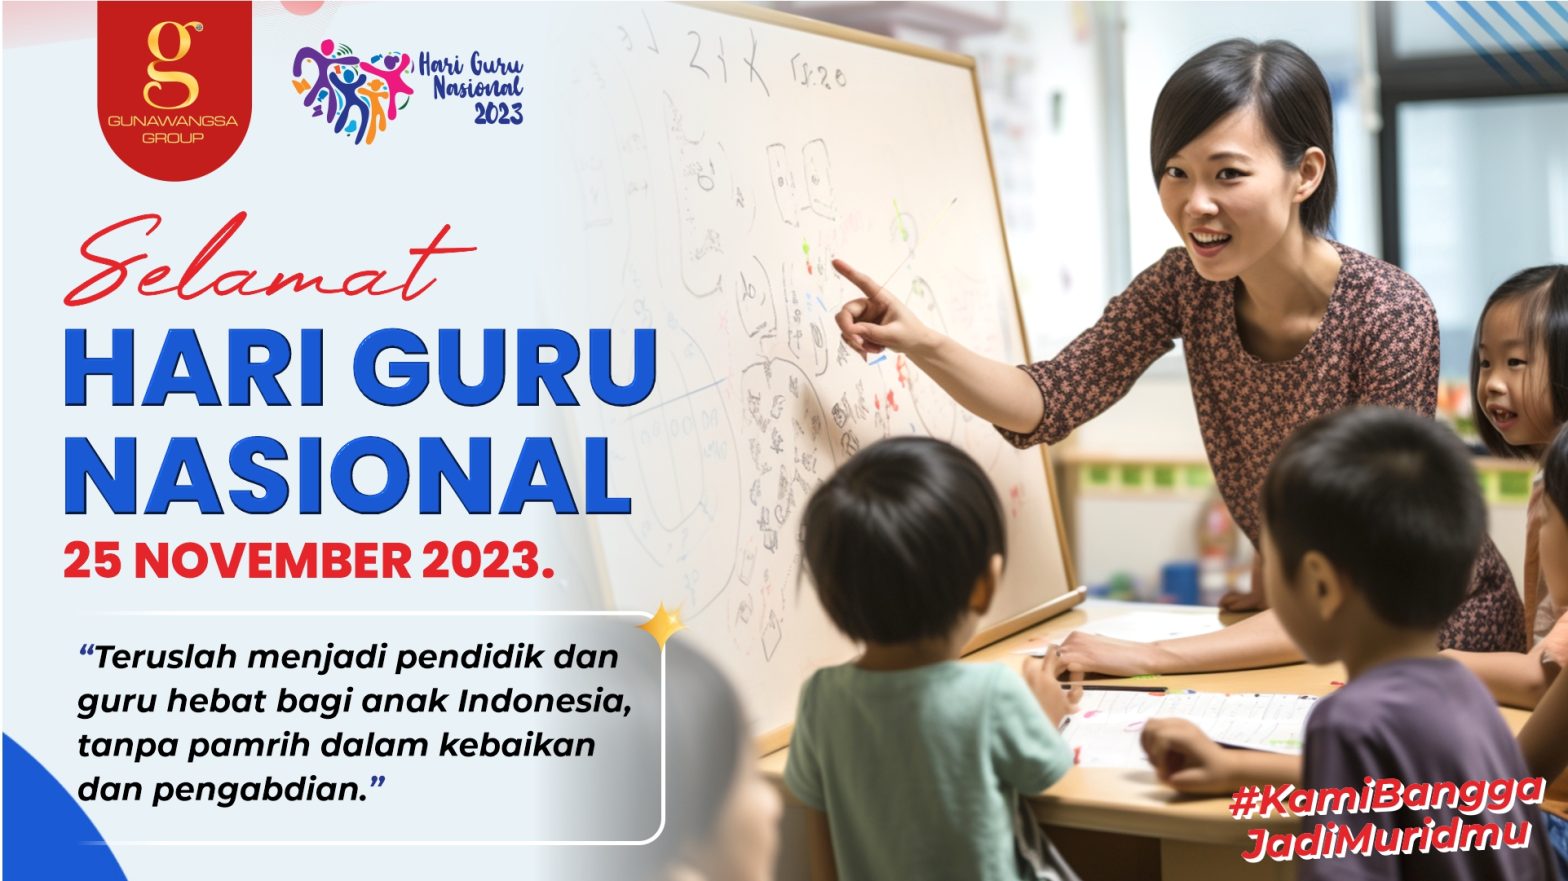 Dedikasi Luar Biasa pada Hari Guru Nasional 2023